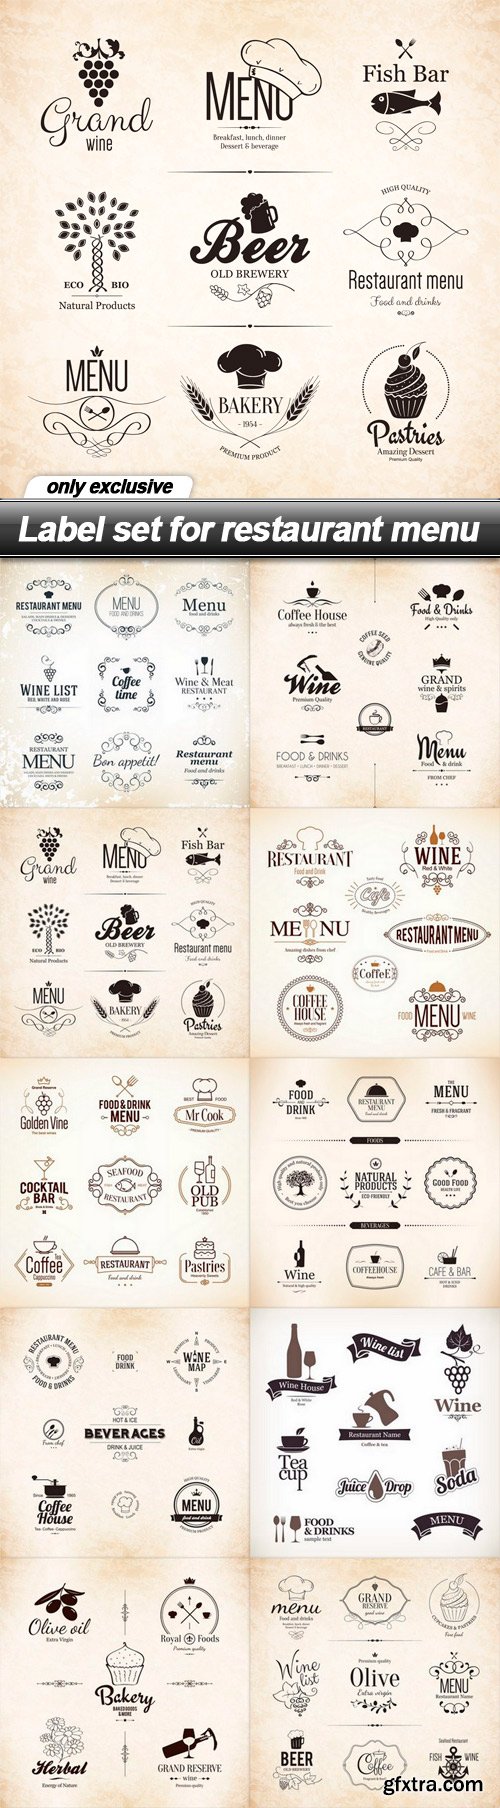 Label set for restaurant menu - 10 EPS